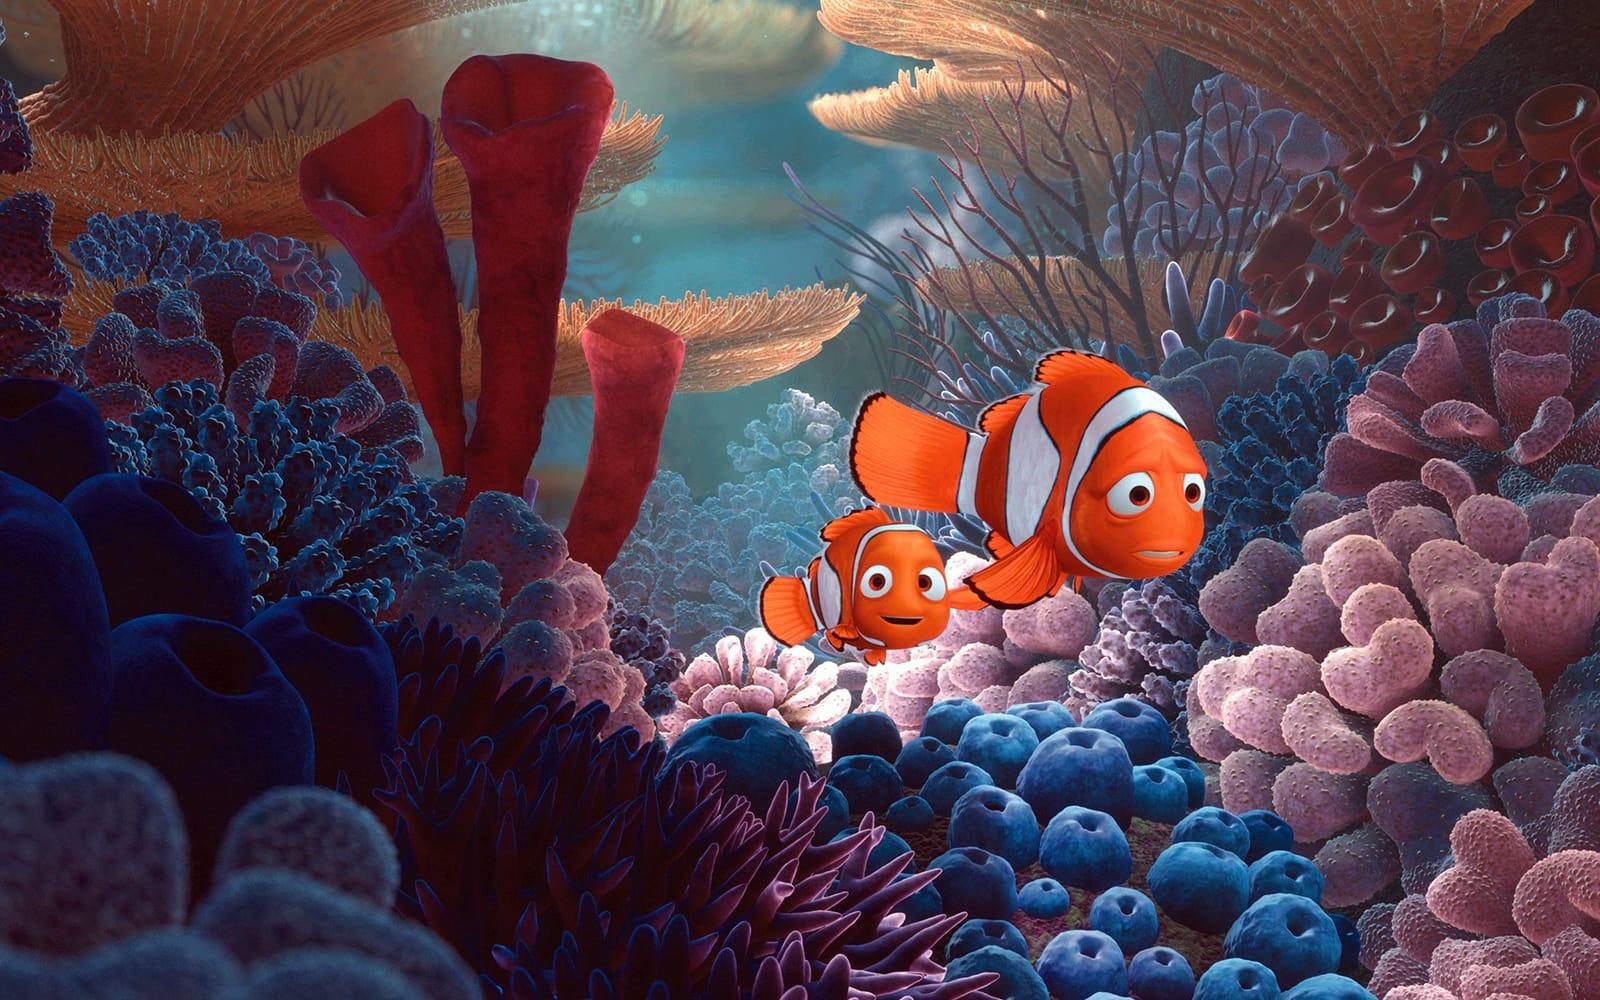 Finding Nemo - Andrew Stanton